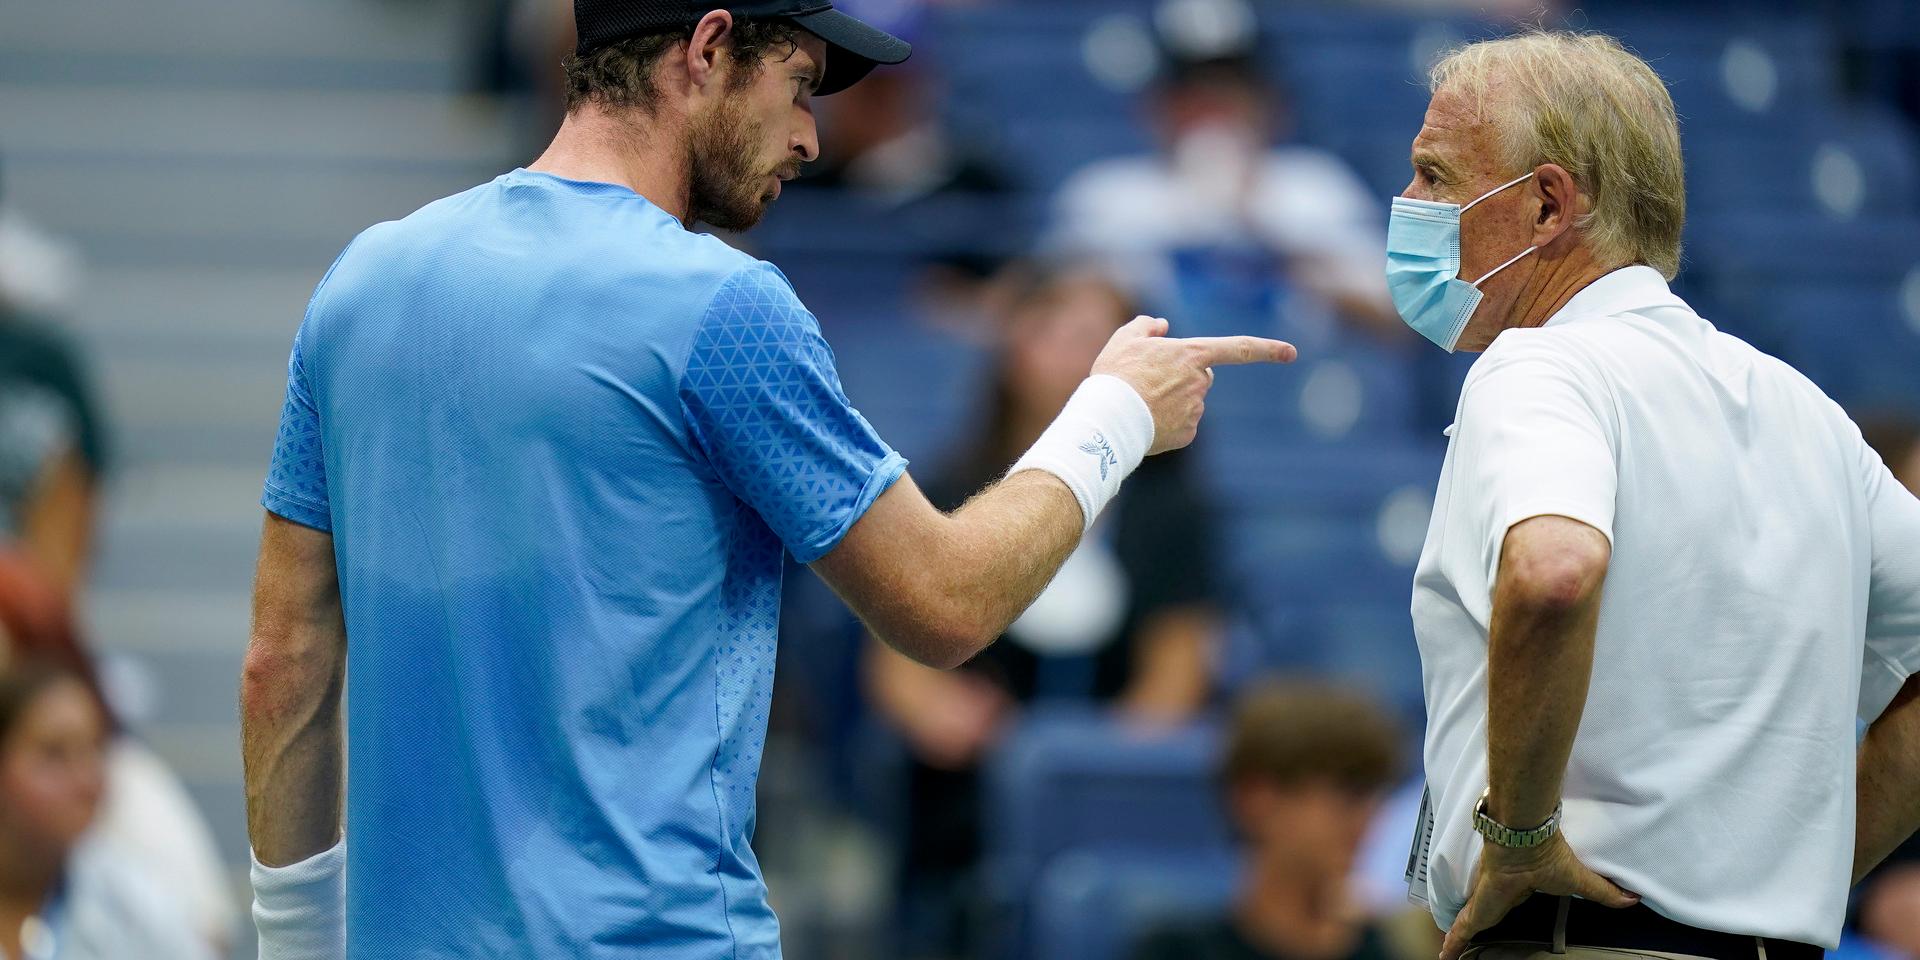 Andy Murray, Storbritannien, klagar till domaren under US Open när Stefanos Tsitsipas tar en lång toapaus. Nu regleras spelarnas avbrott under matcherna. Arkivbild.